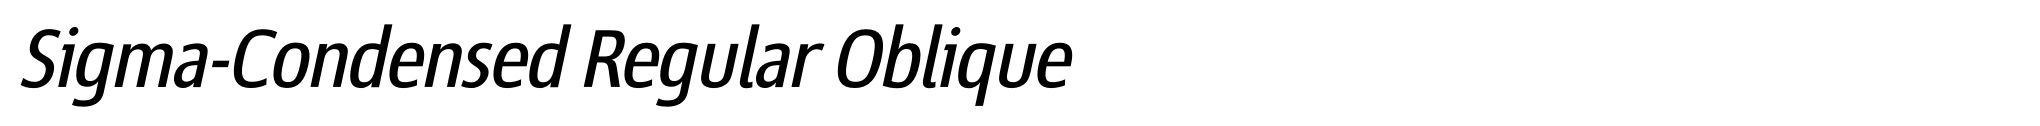 Sigma-Condensed Regular Oblique image